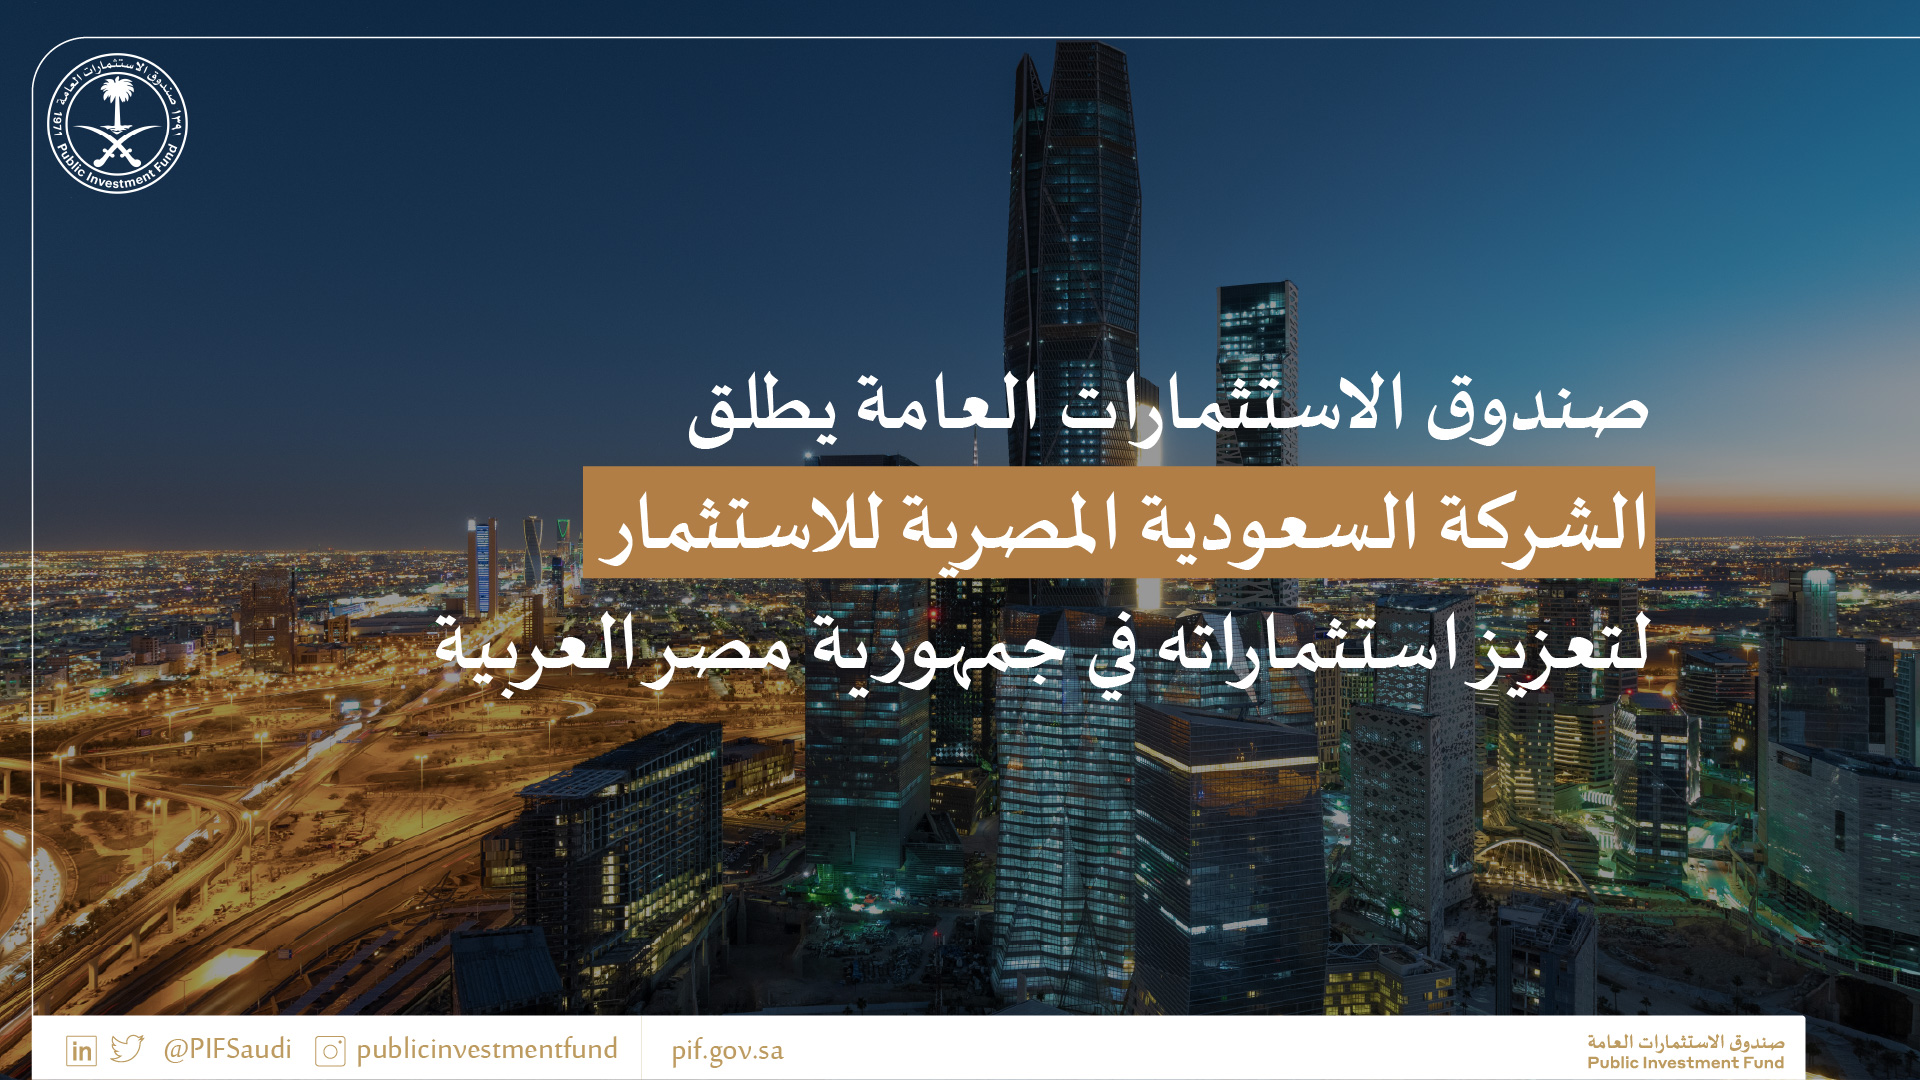 صورة صندوق الاستثمارات العامة يطلق الشركة السعودية المصرية للاستثمار